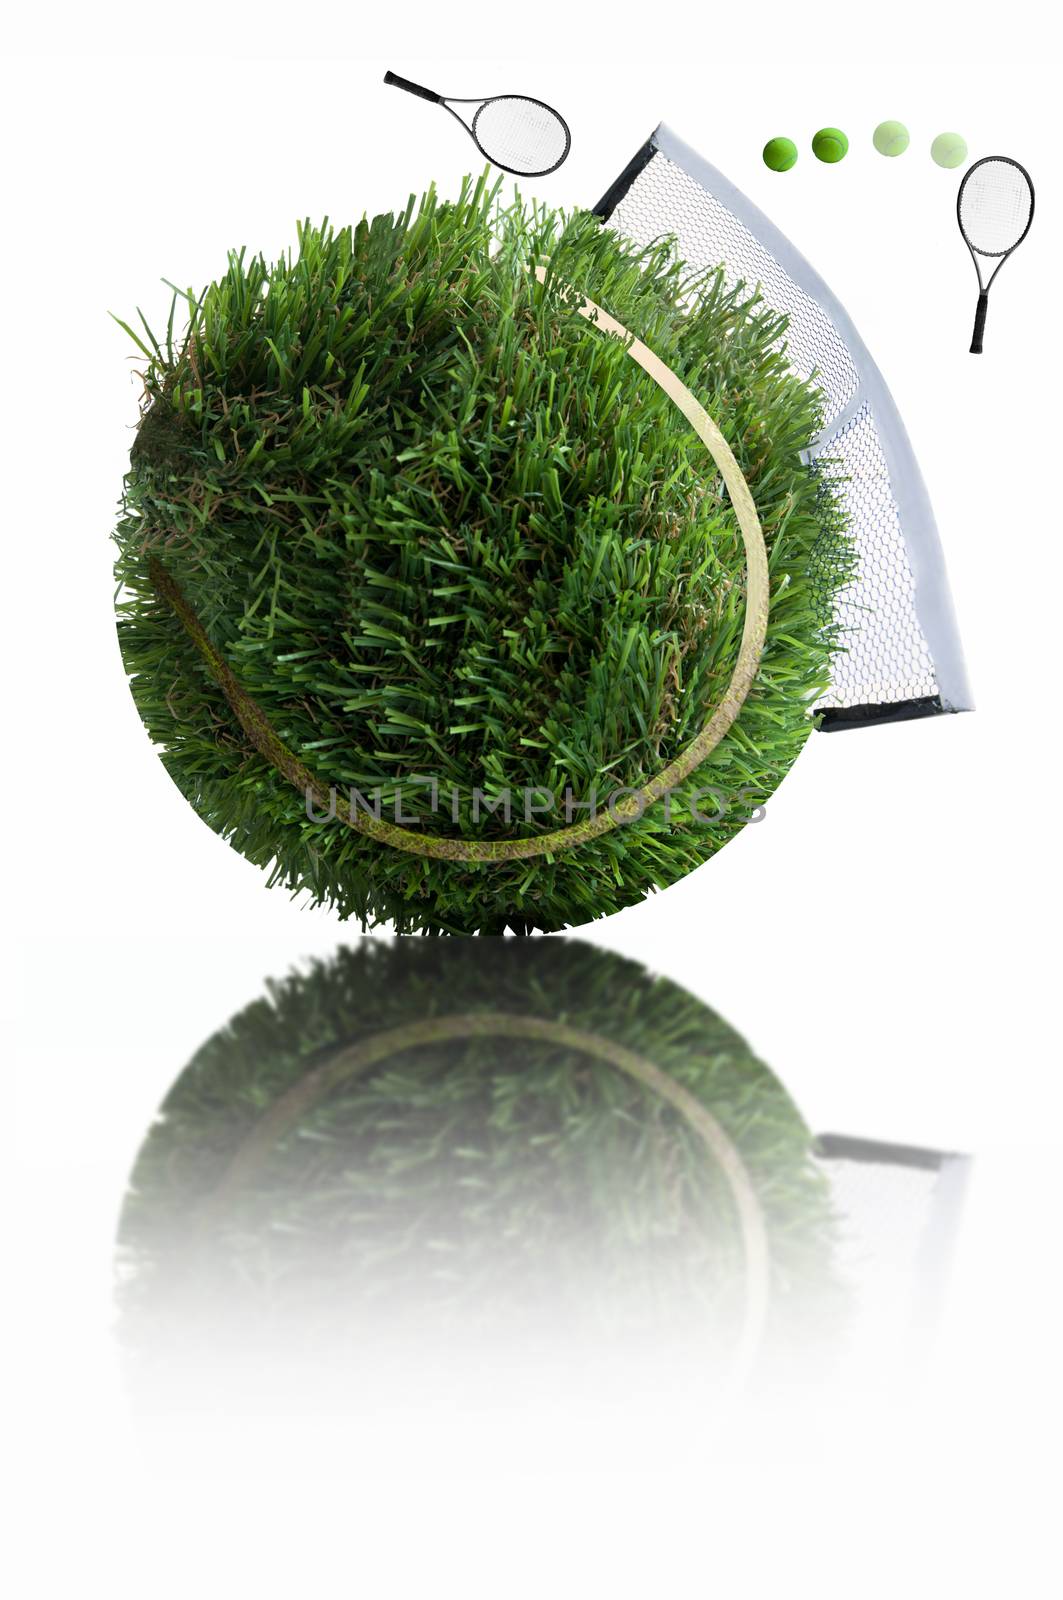 Grass tennis ball concept by unikpix